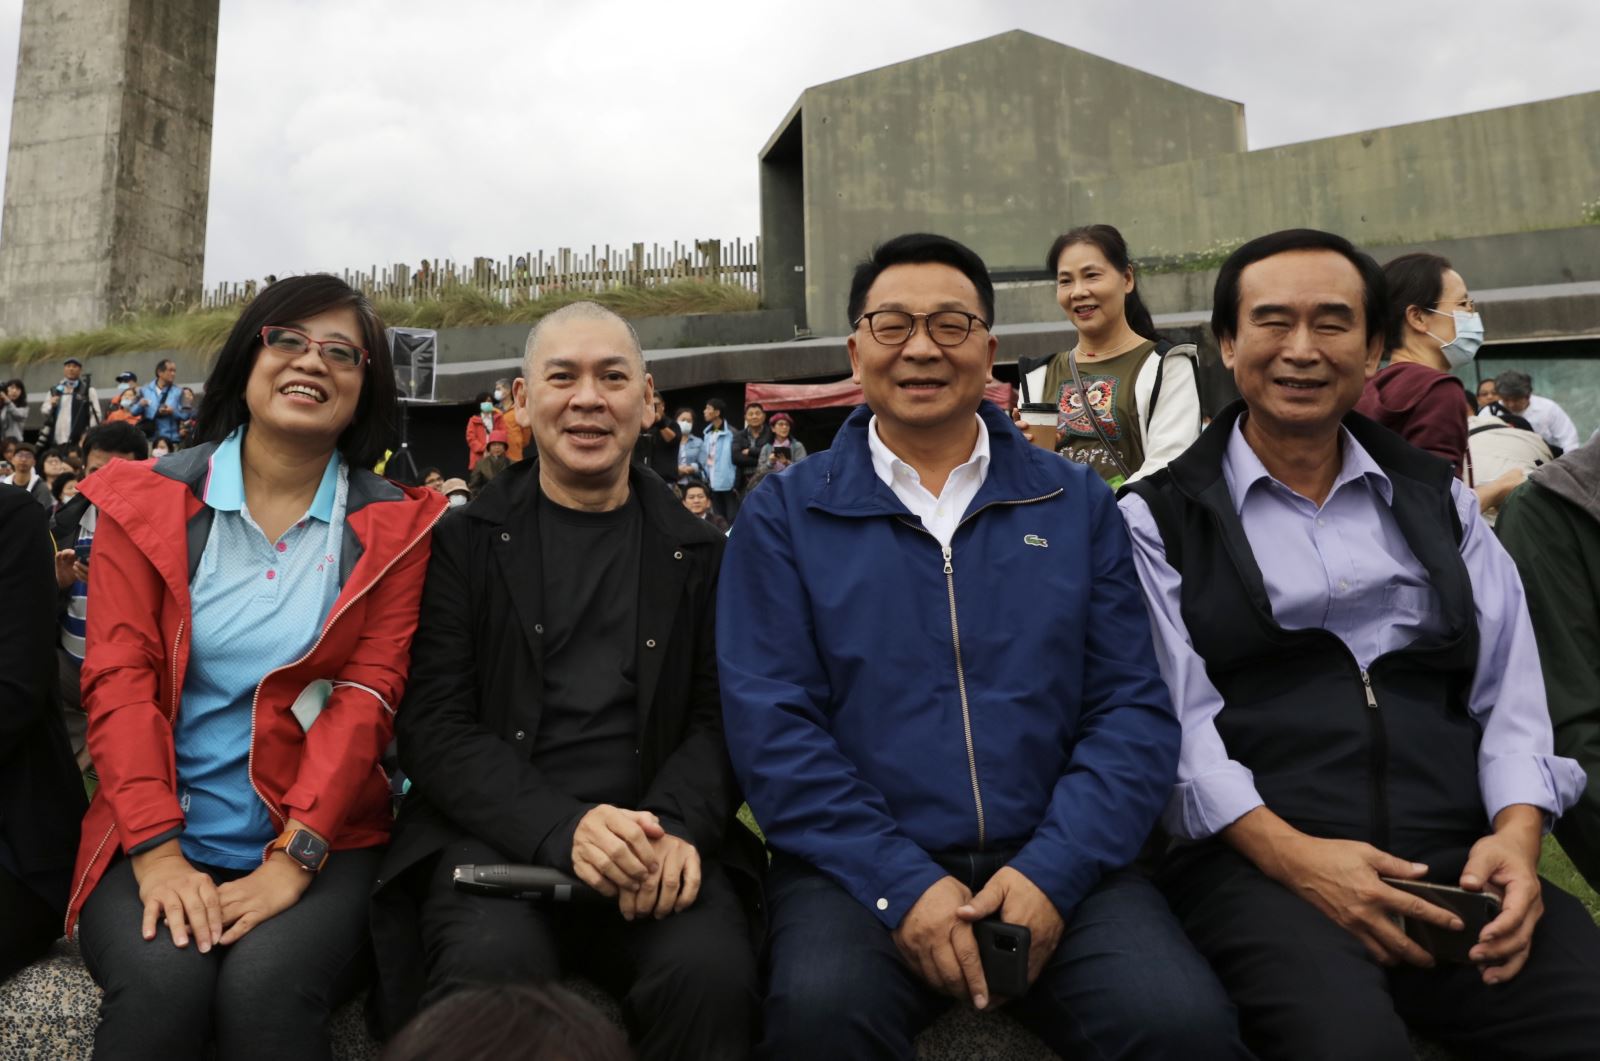 Chen Meixiu 감독과 Cai Mingliang 감독이 Chen Liwei, Opal Shen Xiang, Changqingshan과 함께 단체 사진을 찍었습니다.